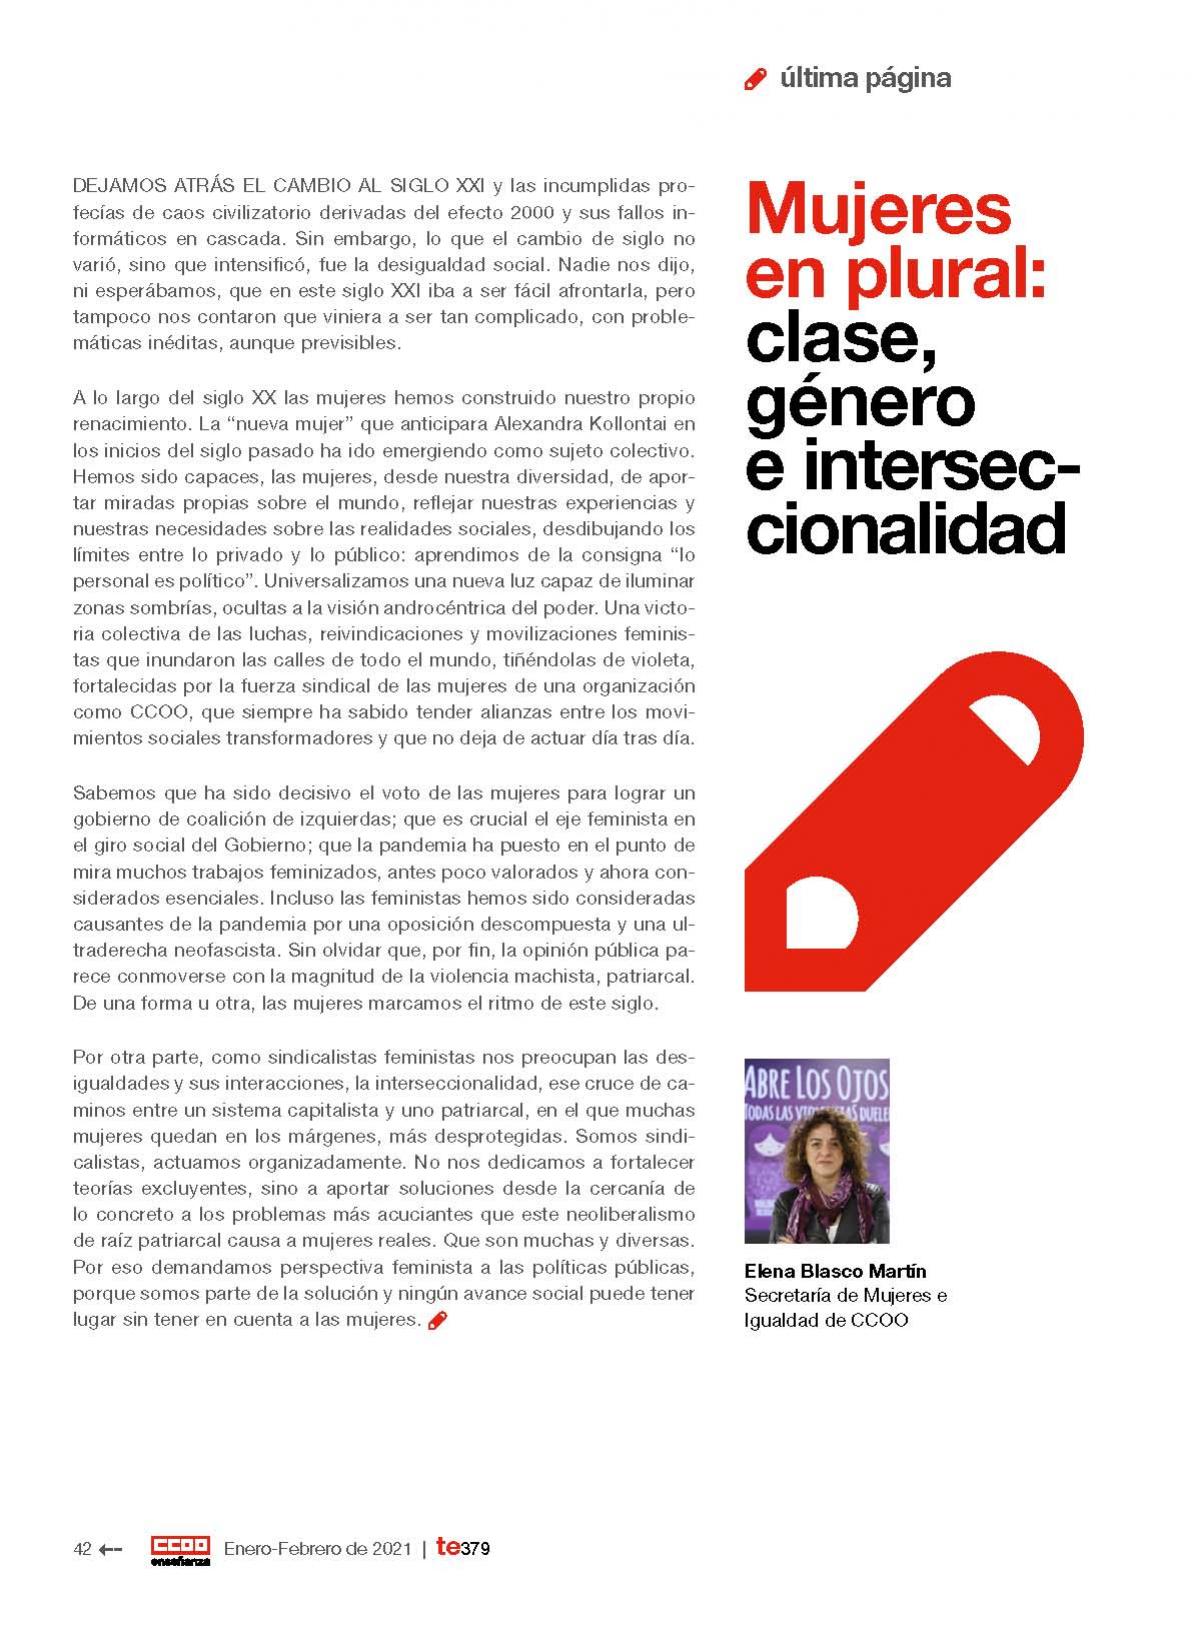 "Mujeres en plural: clase, género e interseccionalidad", de Elena Blasco Martín.